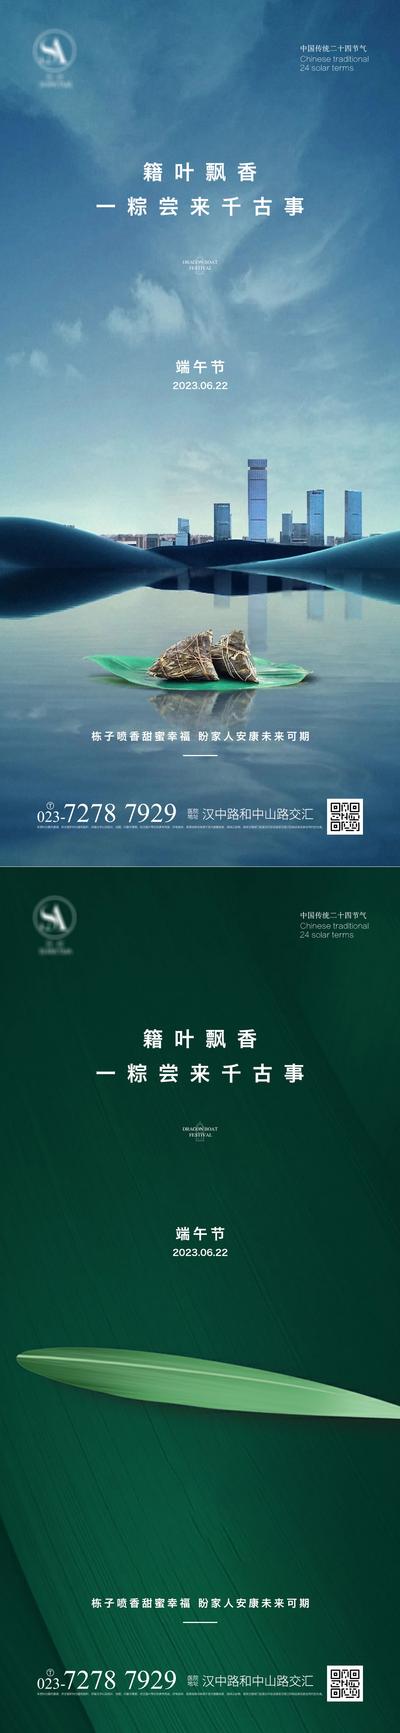 南门网 广告 海报 节日 端午 龙舟 粽叶 品质